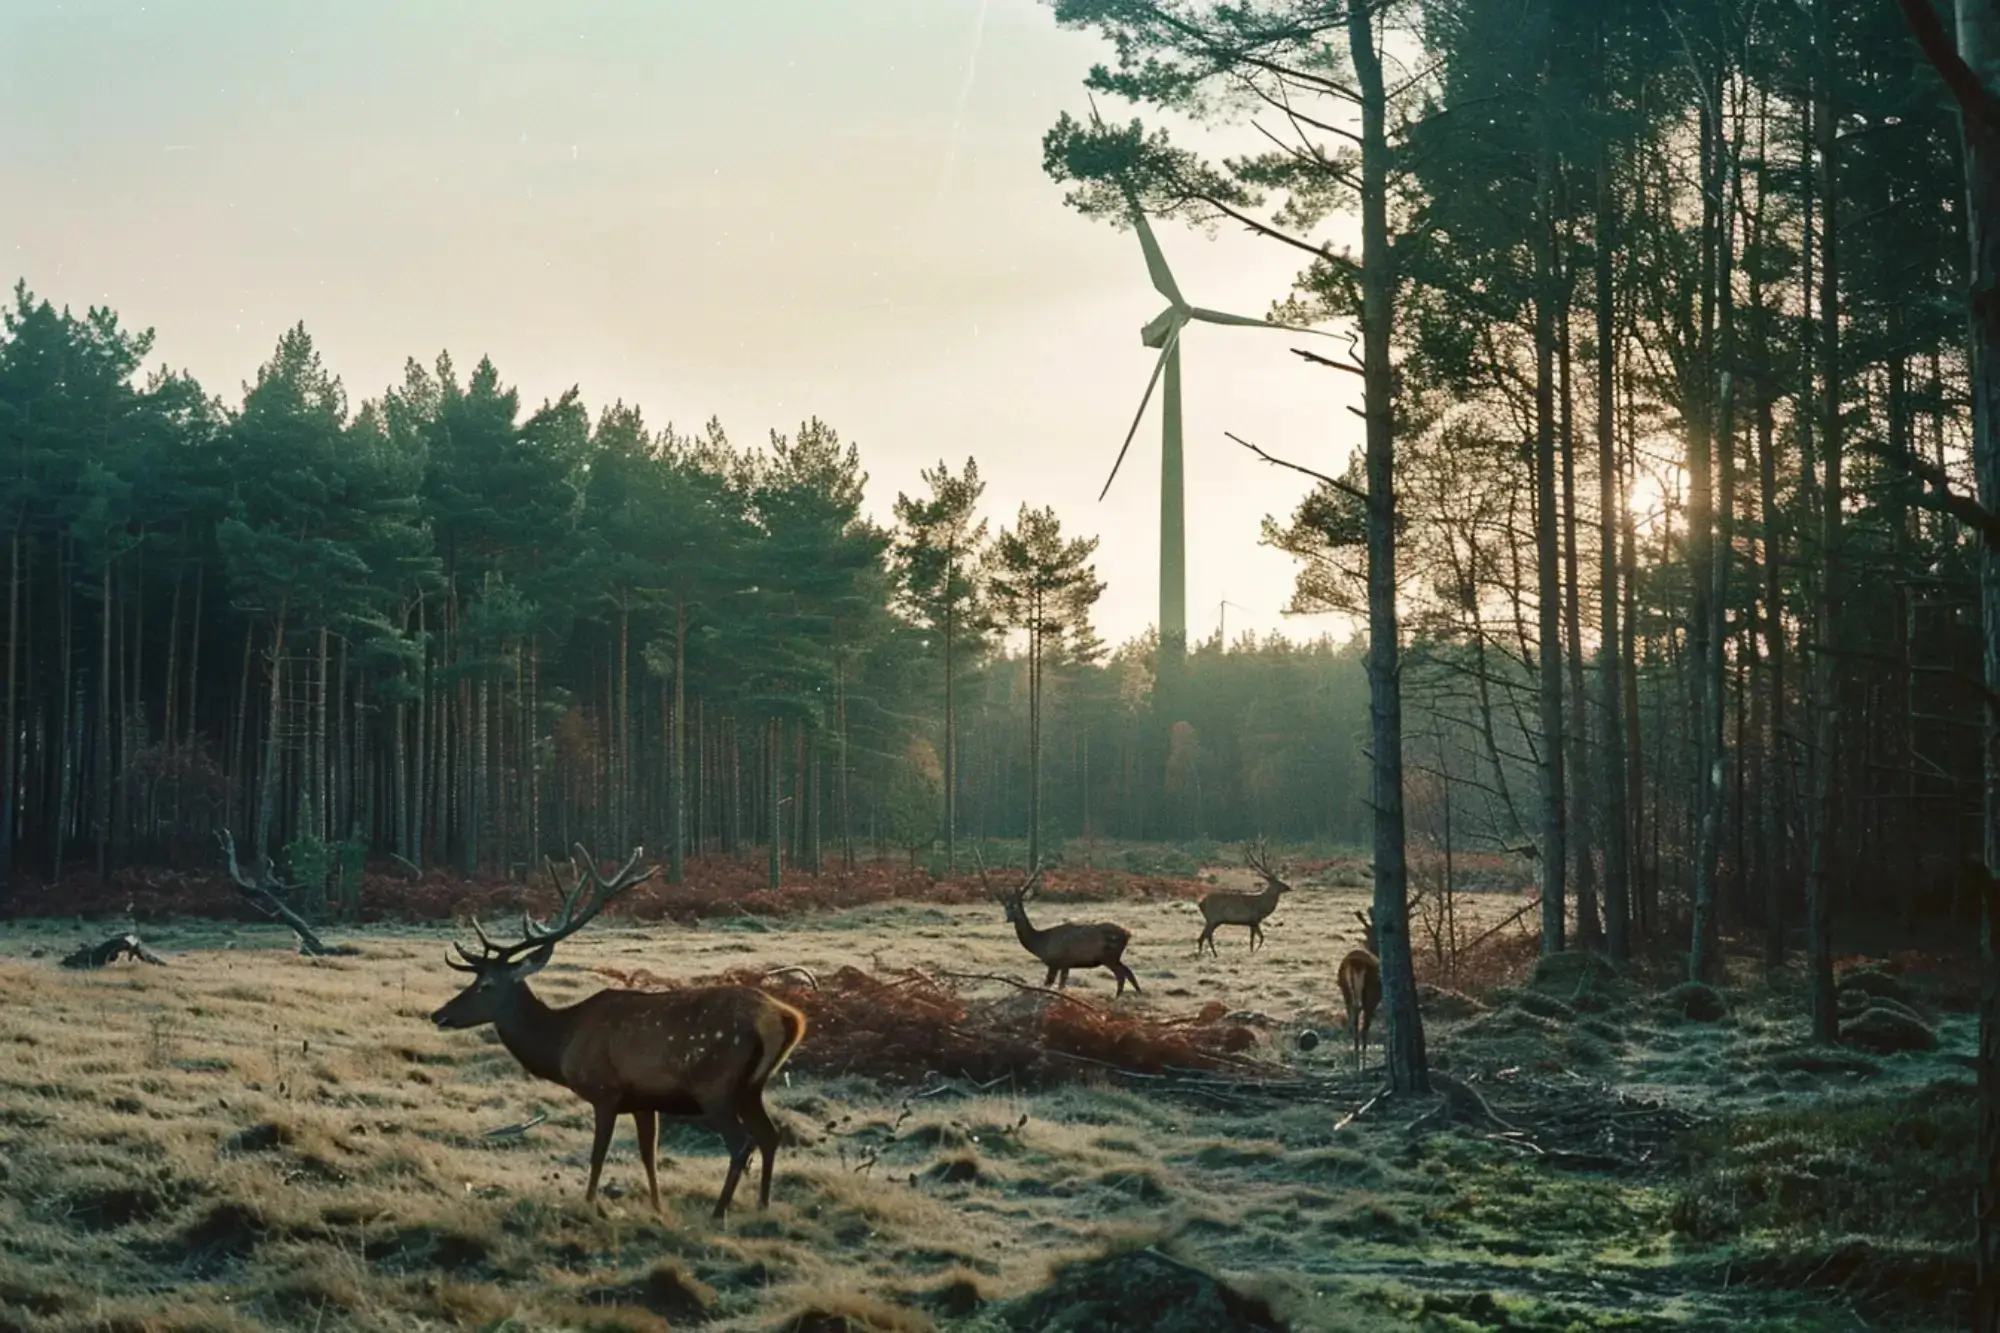 Hirsche auf einer lichten Stelle im Wald bei Morgendämmerung